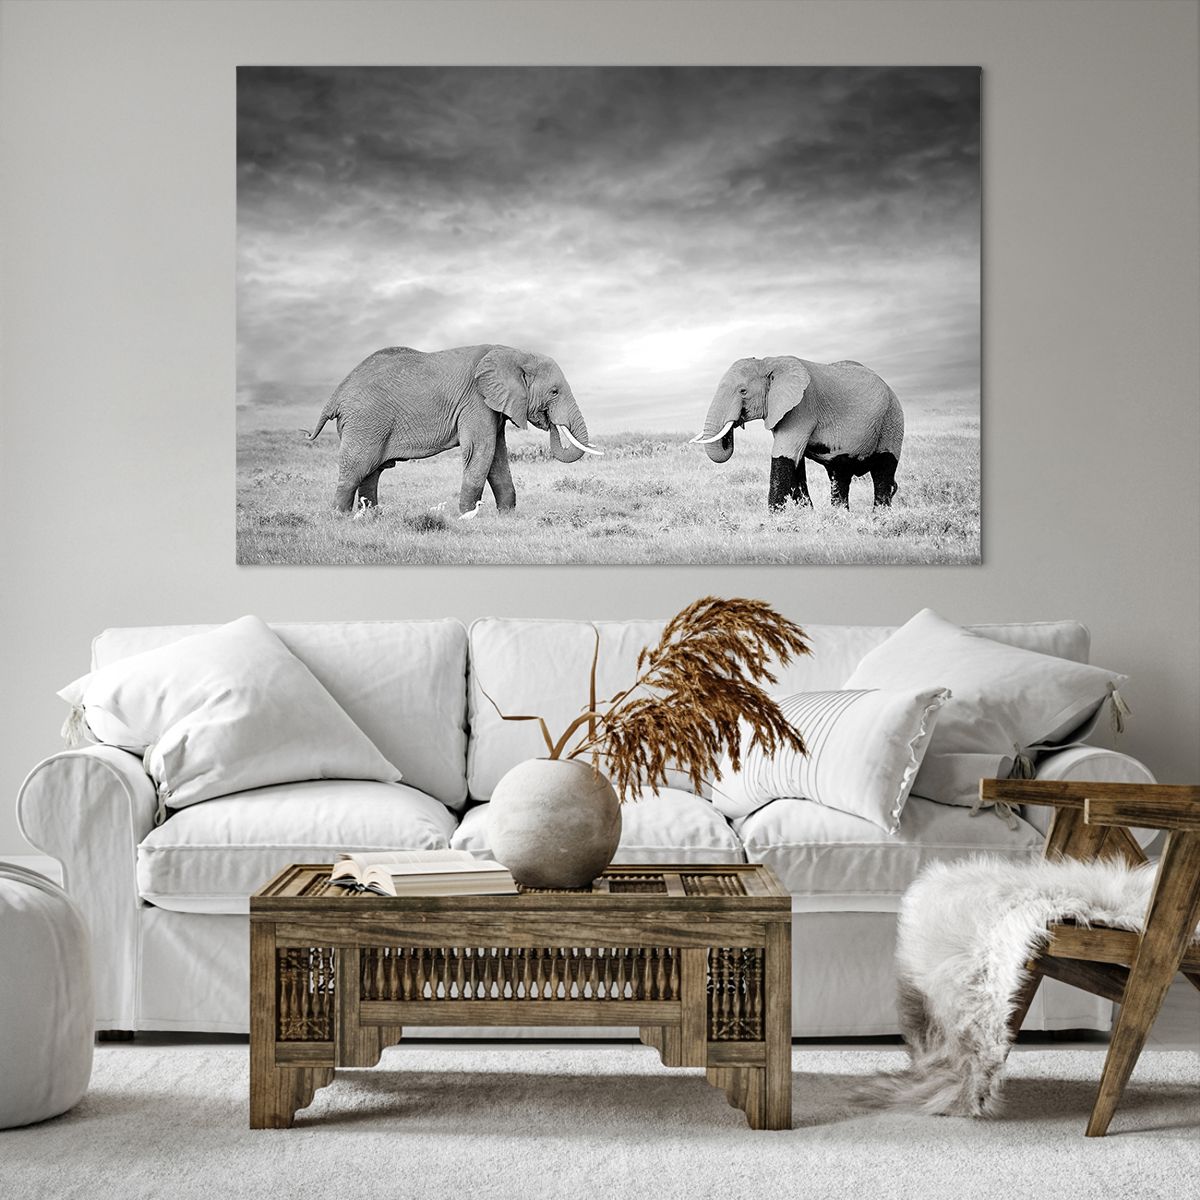 Obrazy na płótnie Słoń, Obrazy na płótnie Zwierzęta, Obrazy na płótnie Safari, Obrazy na płótnie Afryka, Obrazy na płótnie Natura